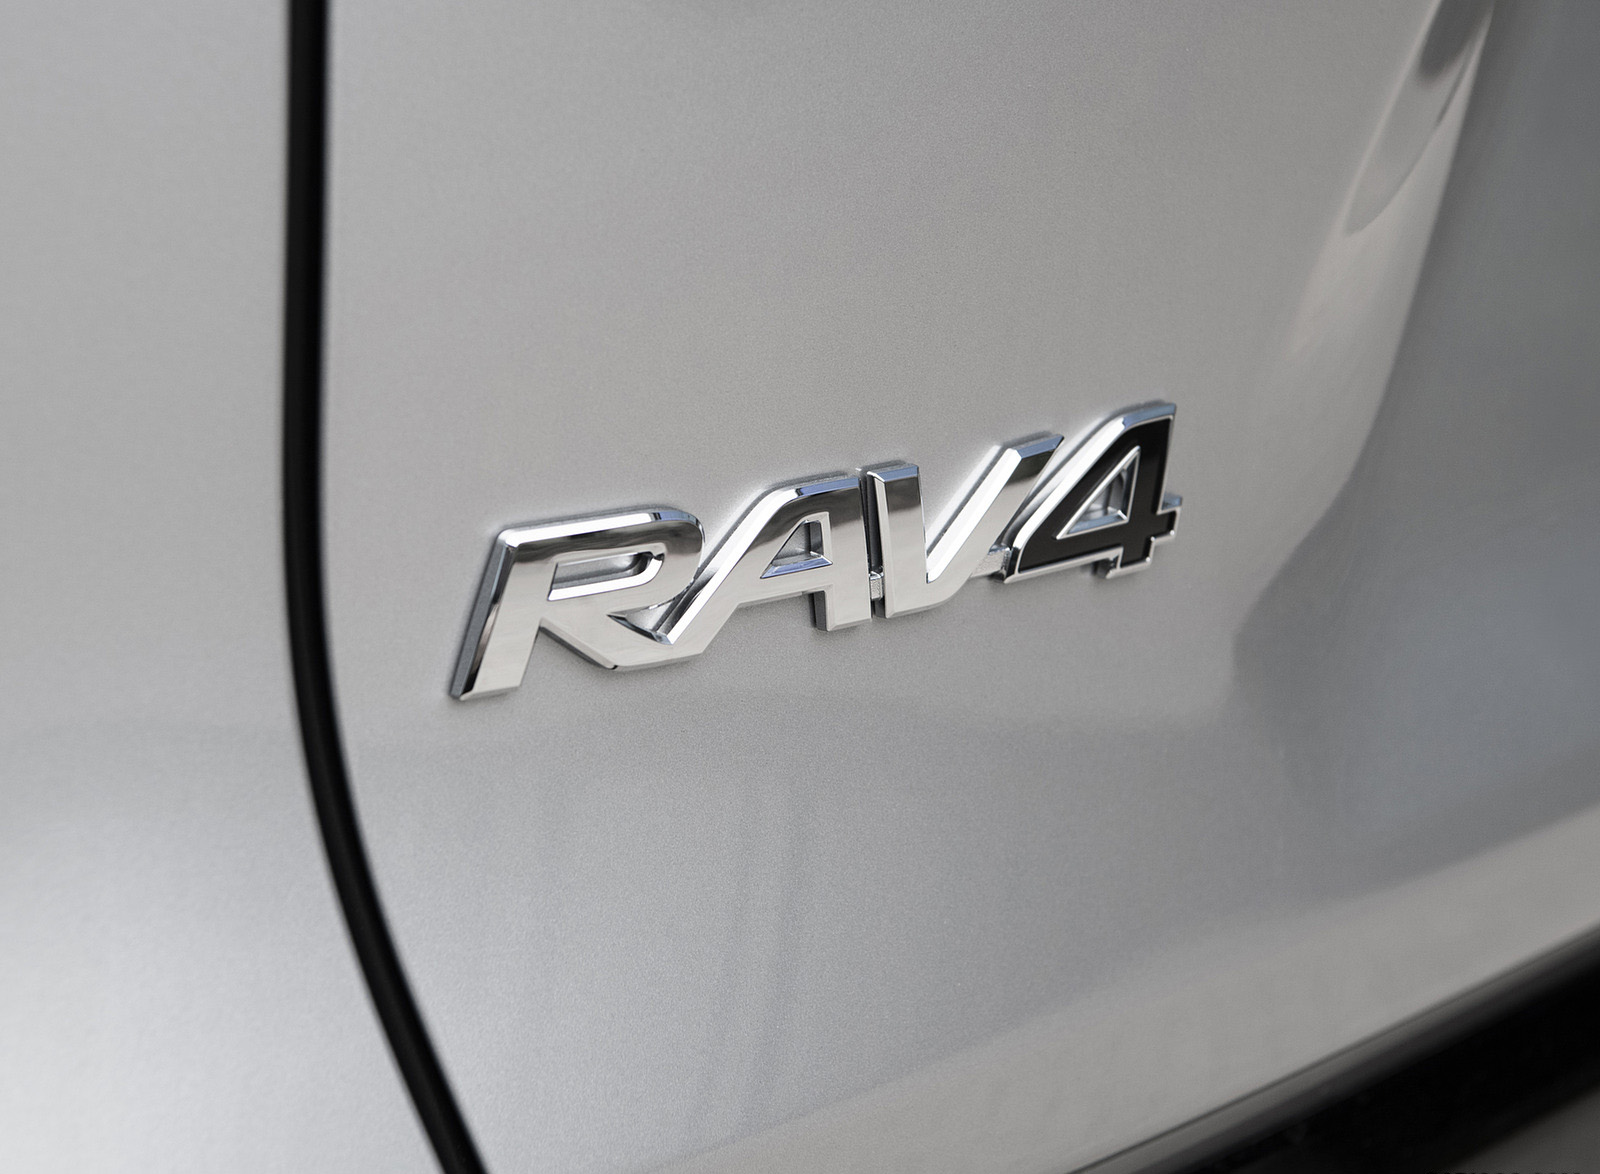 2022 Toyota RAV4 SE Hybrid Badge Wallpapers #14 of 42